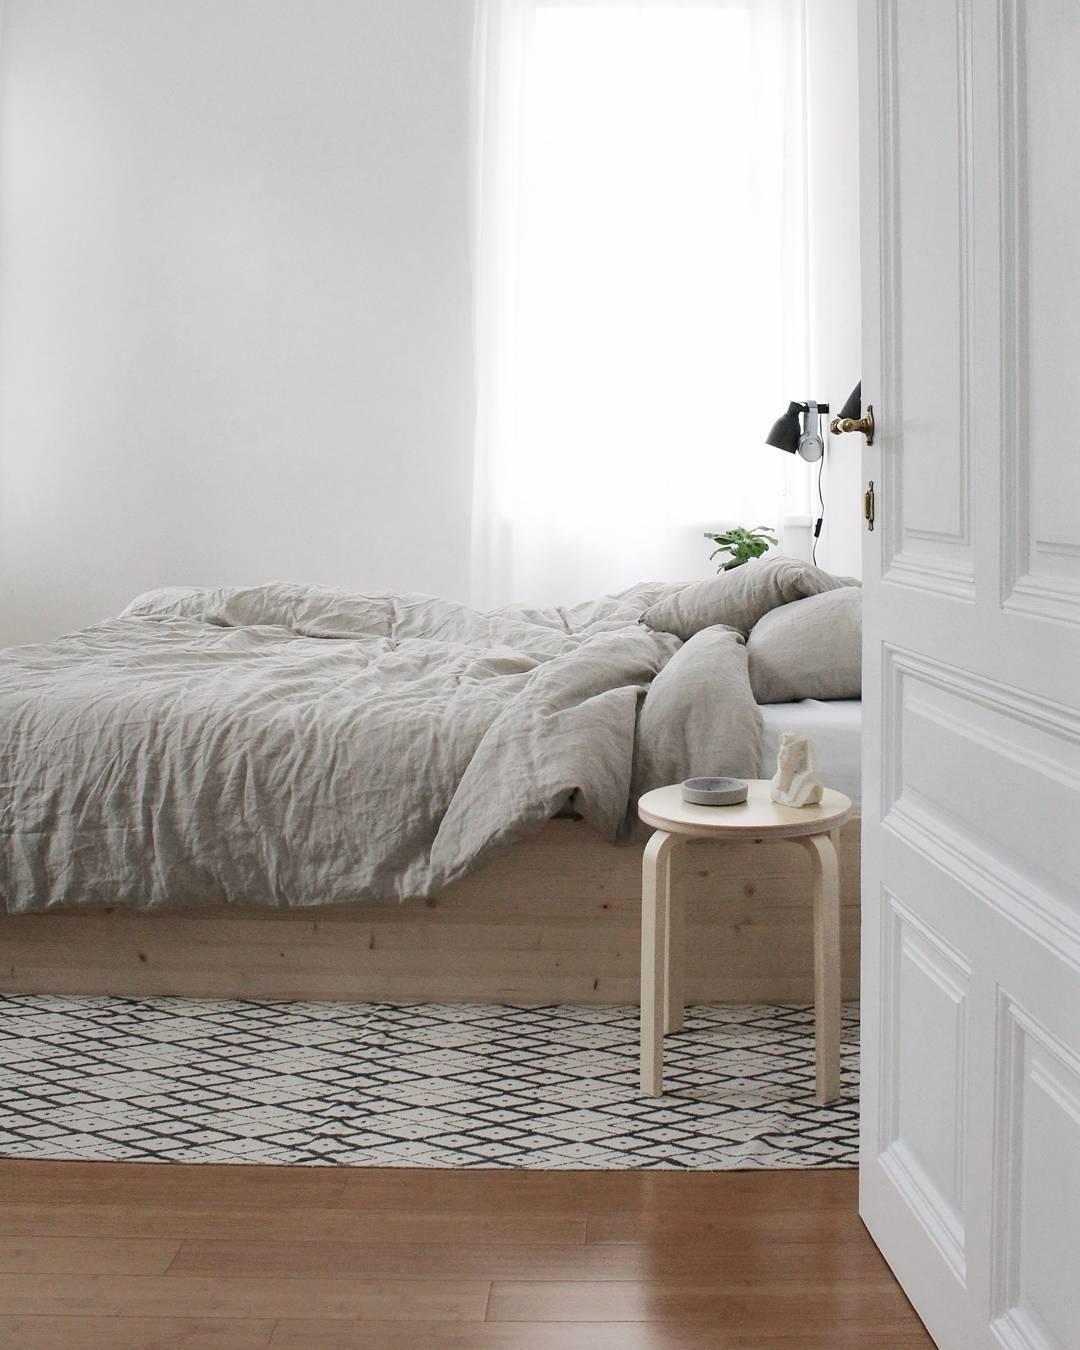 Winterhangover & Schlafzimmerblick 😴 #DIYweek #minimalism #interior #living #altbau #schlafzimmer 